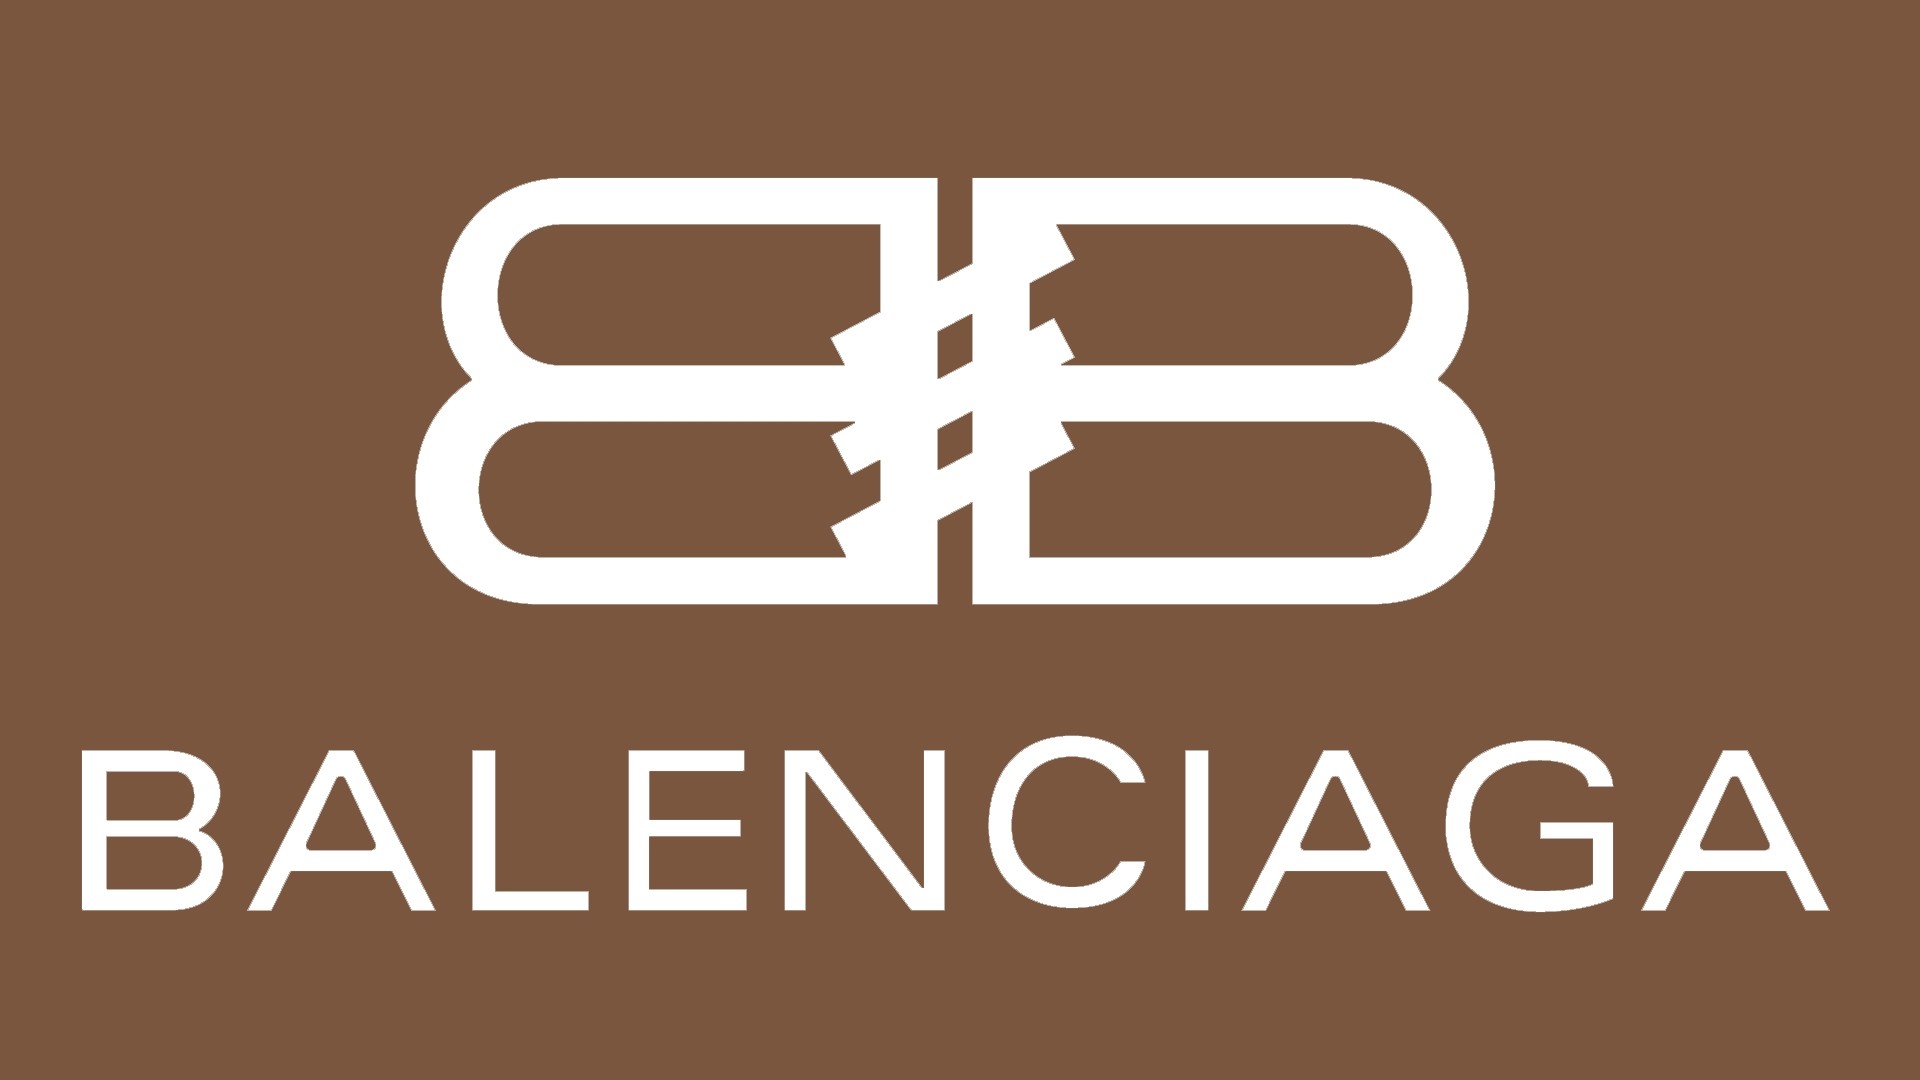 Balenciaga hd wallpaper download